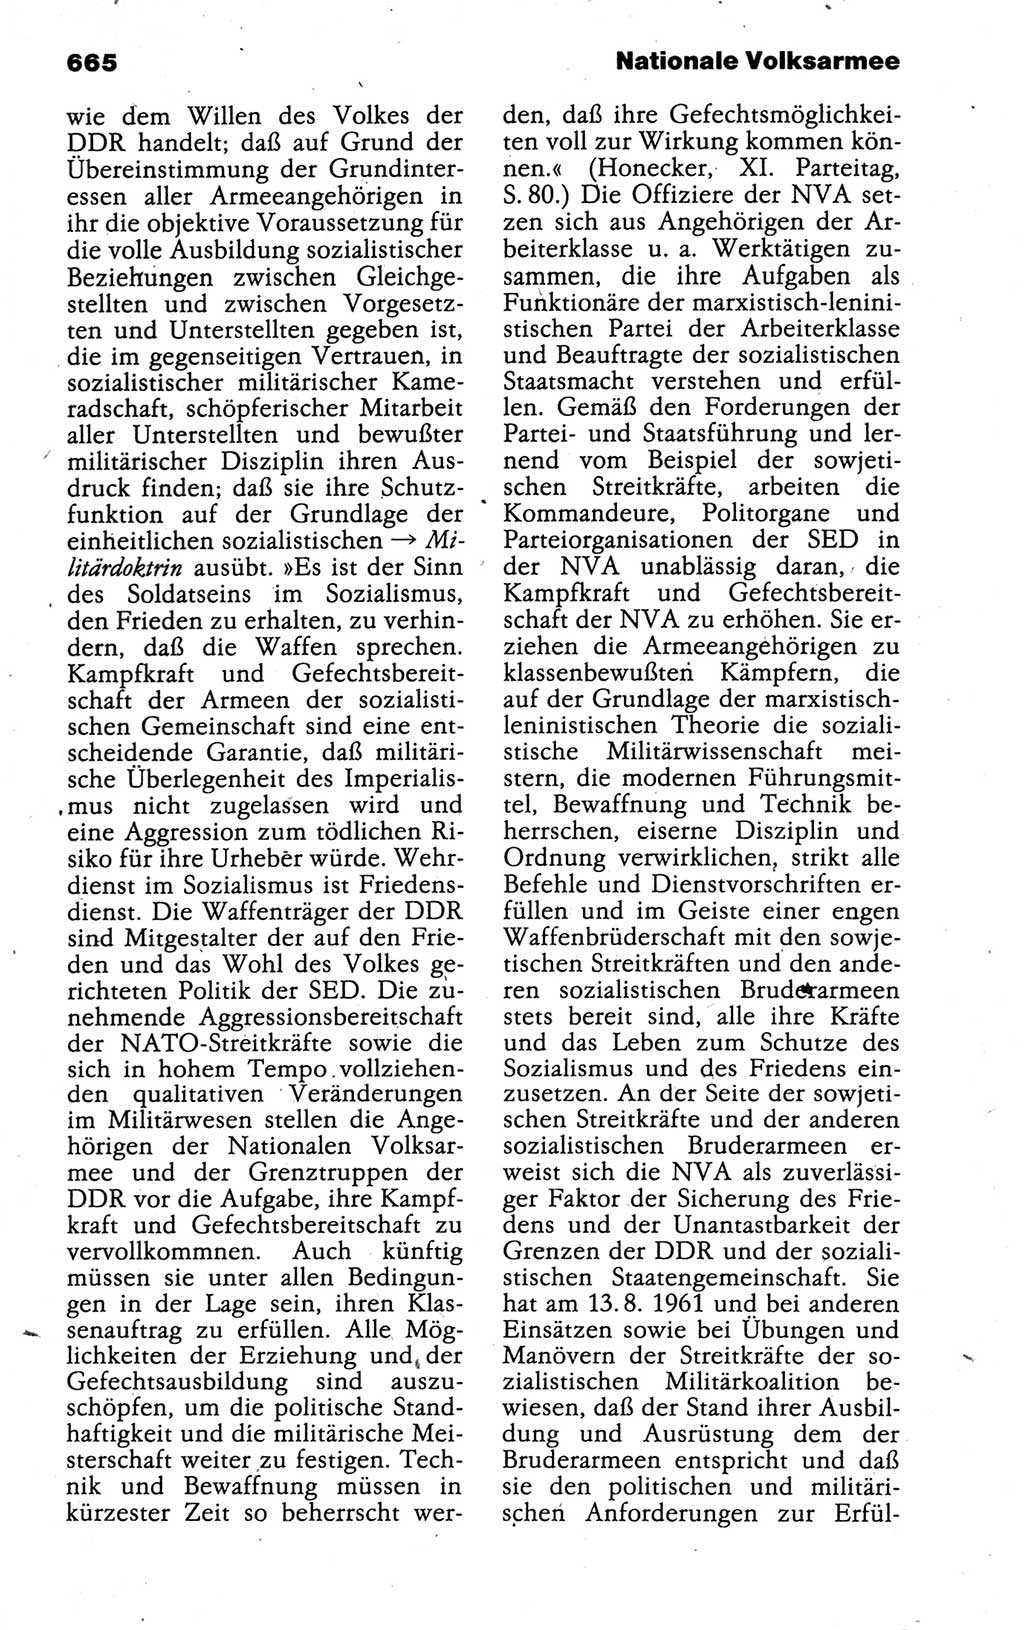 Kleines politisches Wörterbuch [Deutsche Demokratische Republik (DDR)] 1988, Seite 665 (Kl. pol. Wb. DDR 1988, S. 665)